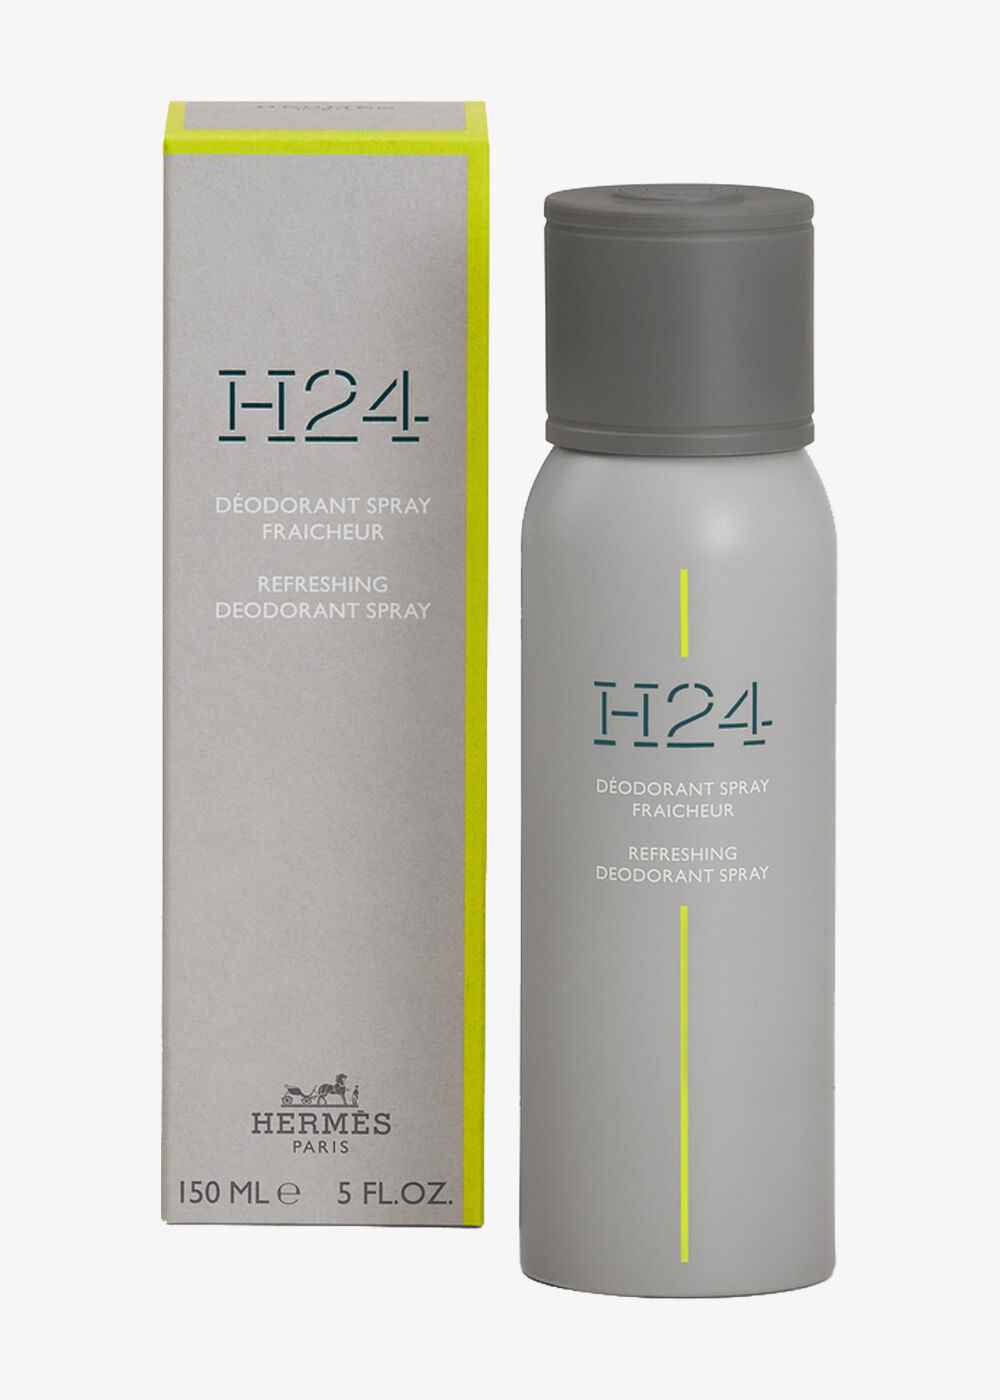 Deodorant «H24»